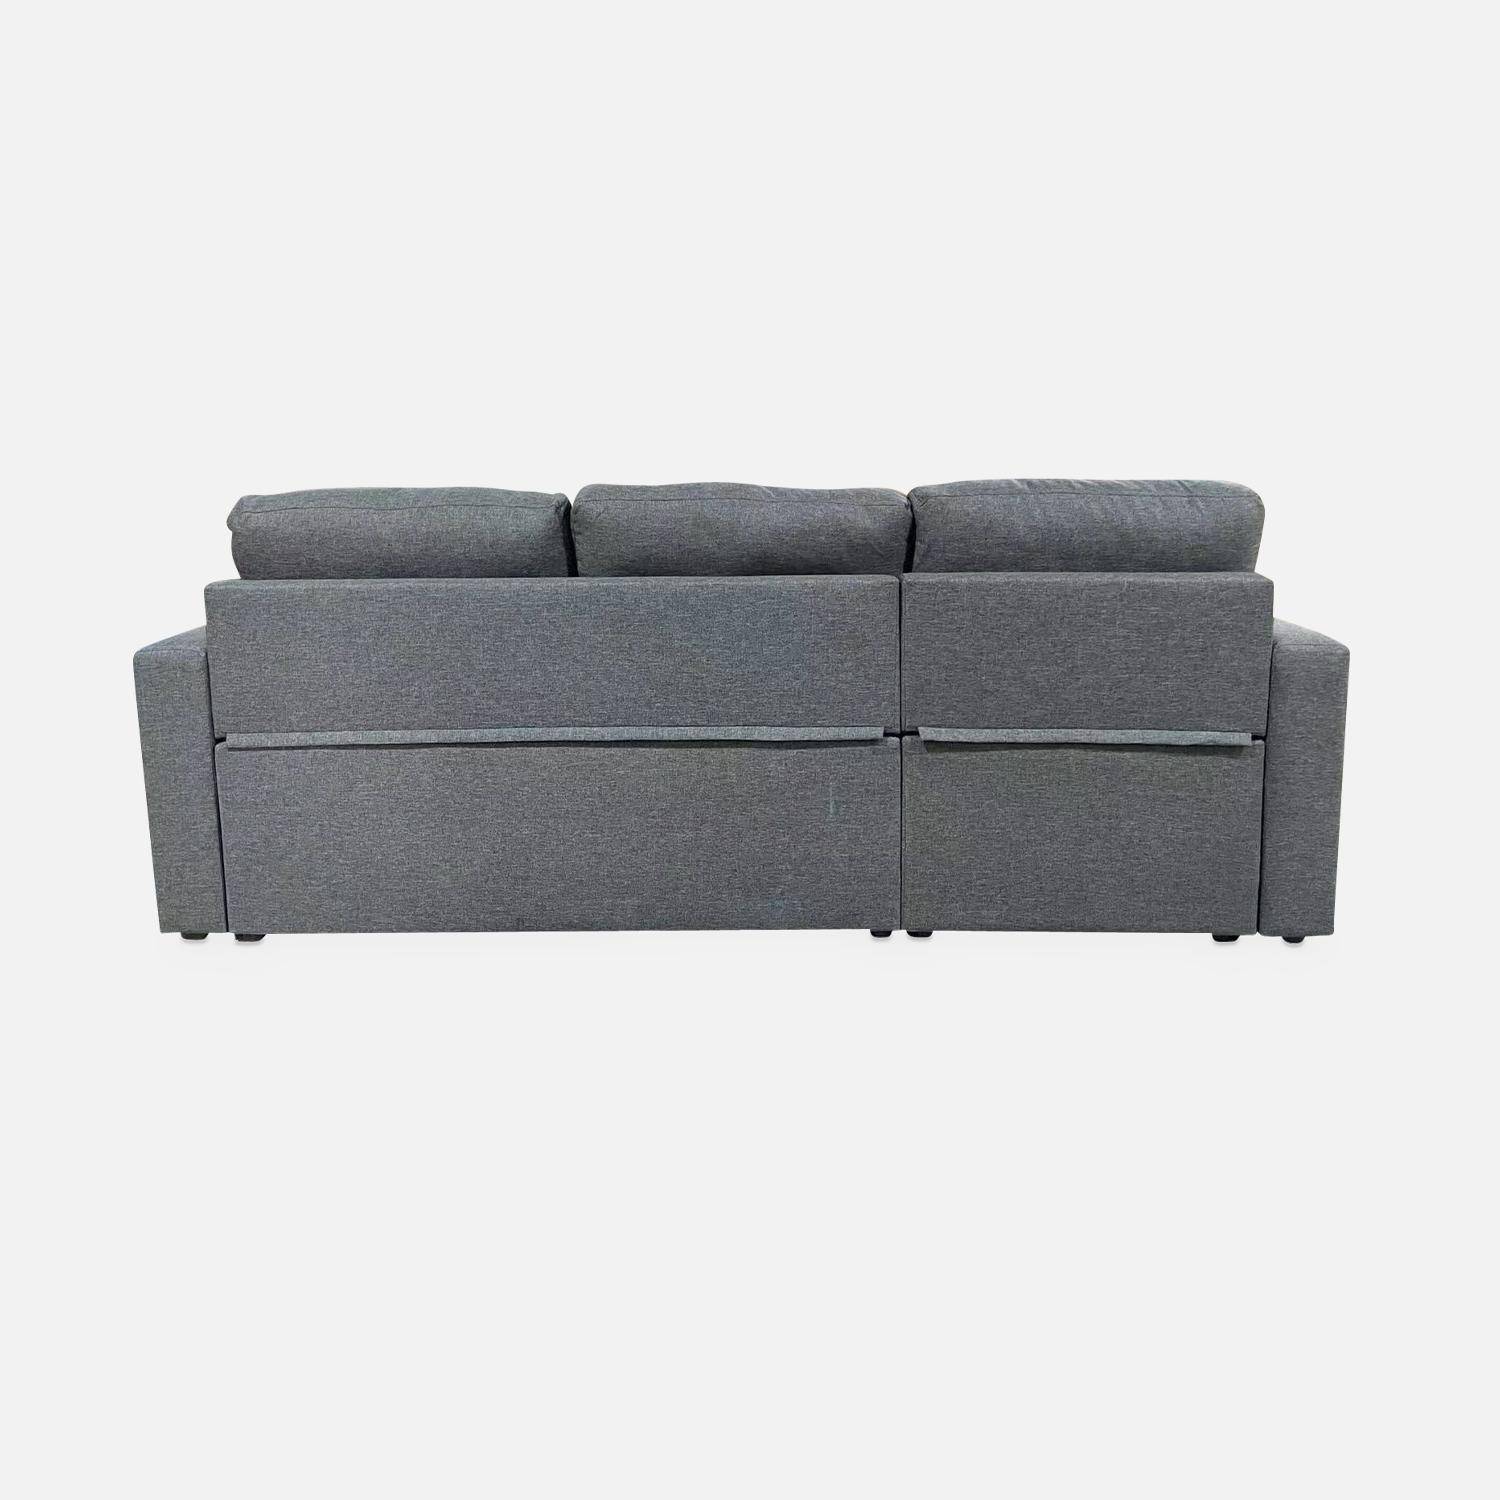 Canapé esquinero convertible en tejido gris moteado oscuro - IDA - 3 plazas, sillón esquinero reversible, caja de almacenaje, cama modular  Photo7